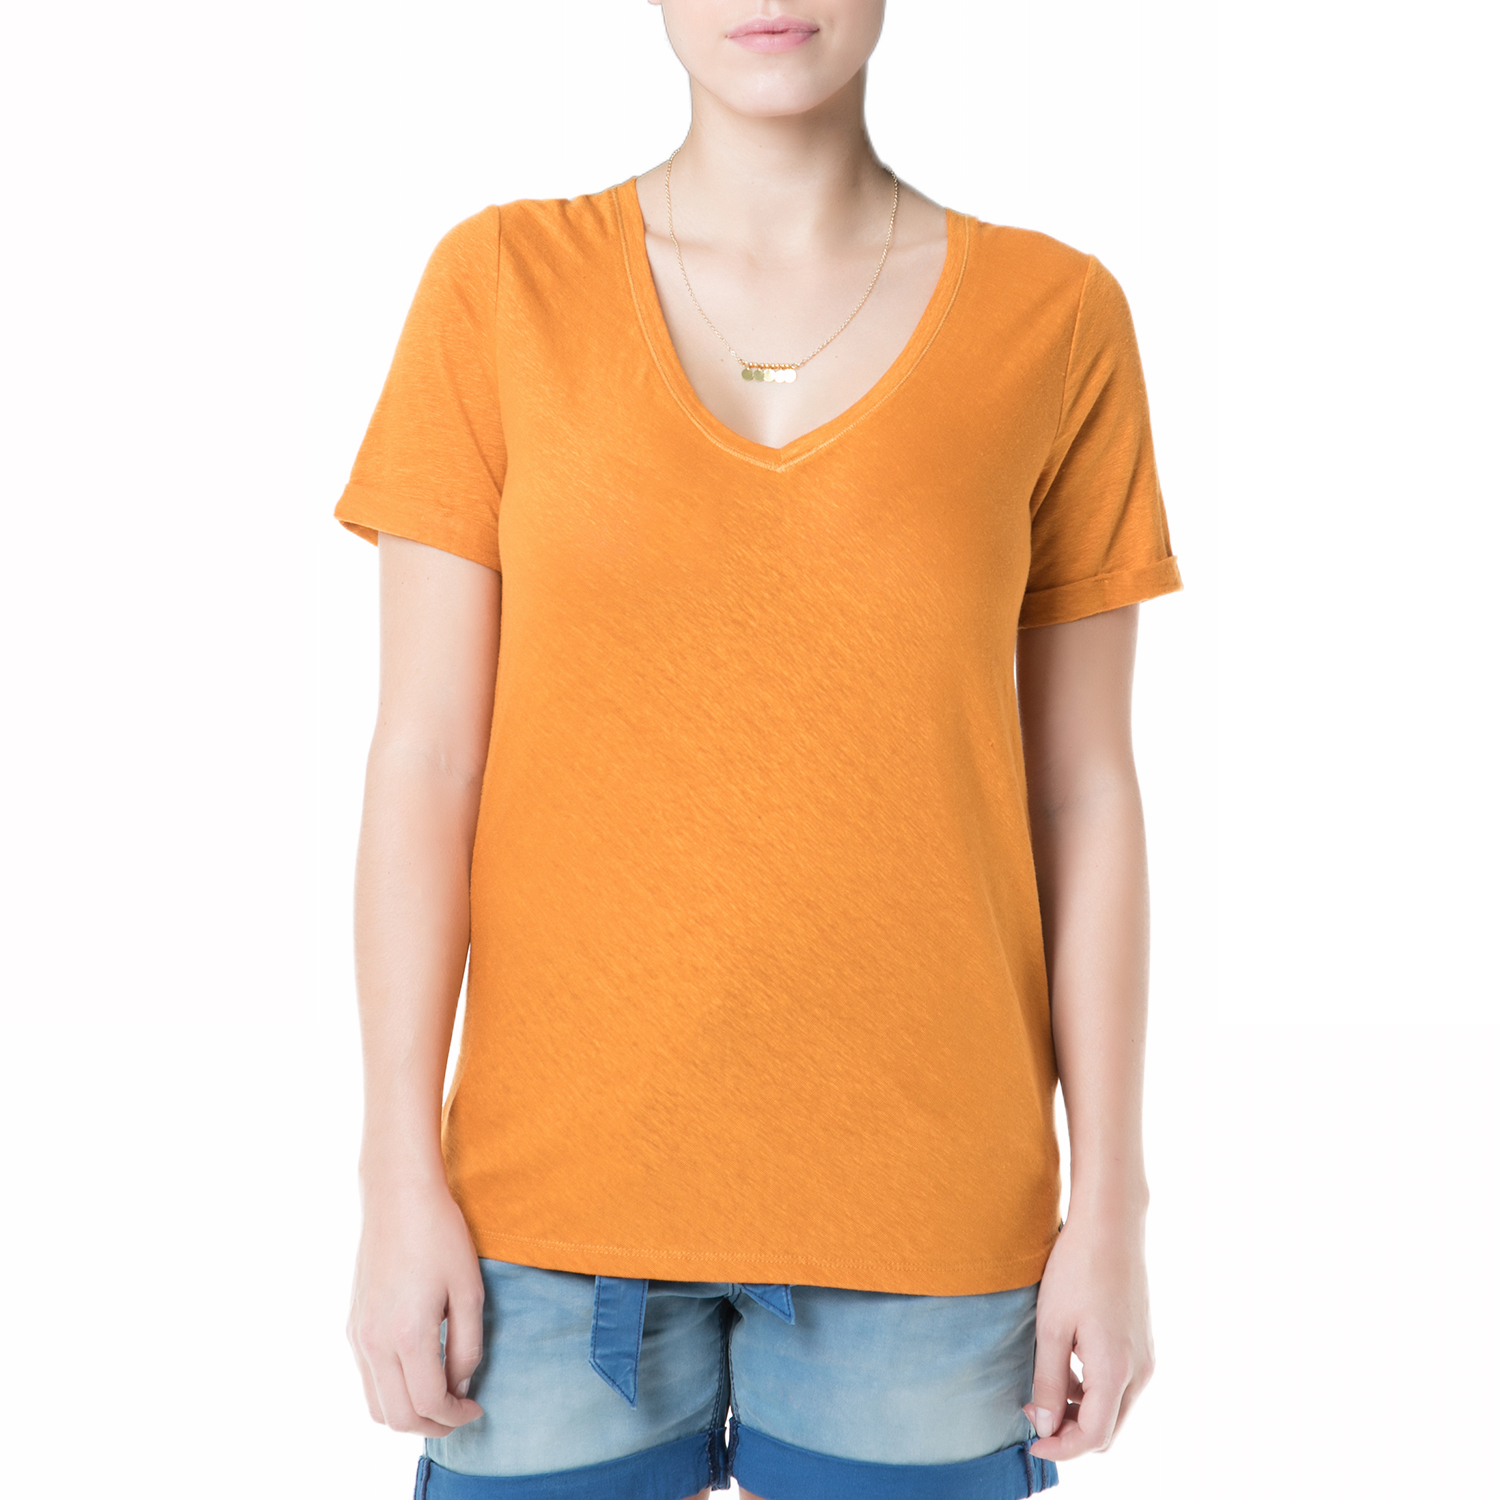 Γυναικεία/Ρούχα/Μπλούζες/Κοντομάνικες SCOTCH & SODA - Γυναικεία κοντομάνικη μπλούζα Scotch & Soda πορτοκαλί